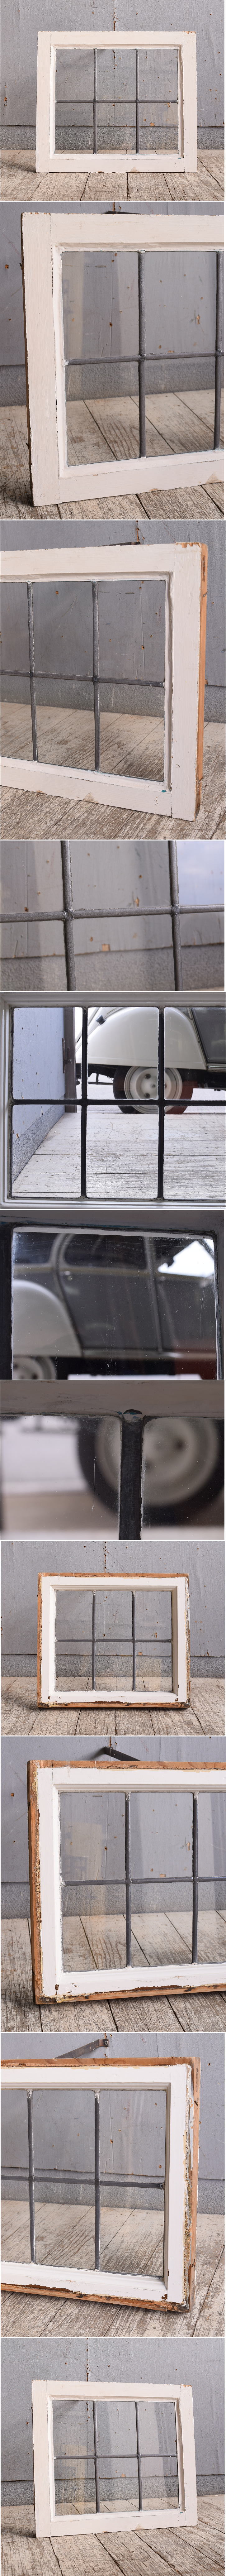 イギリス アンティーク 窓 無色透明 10523